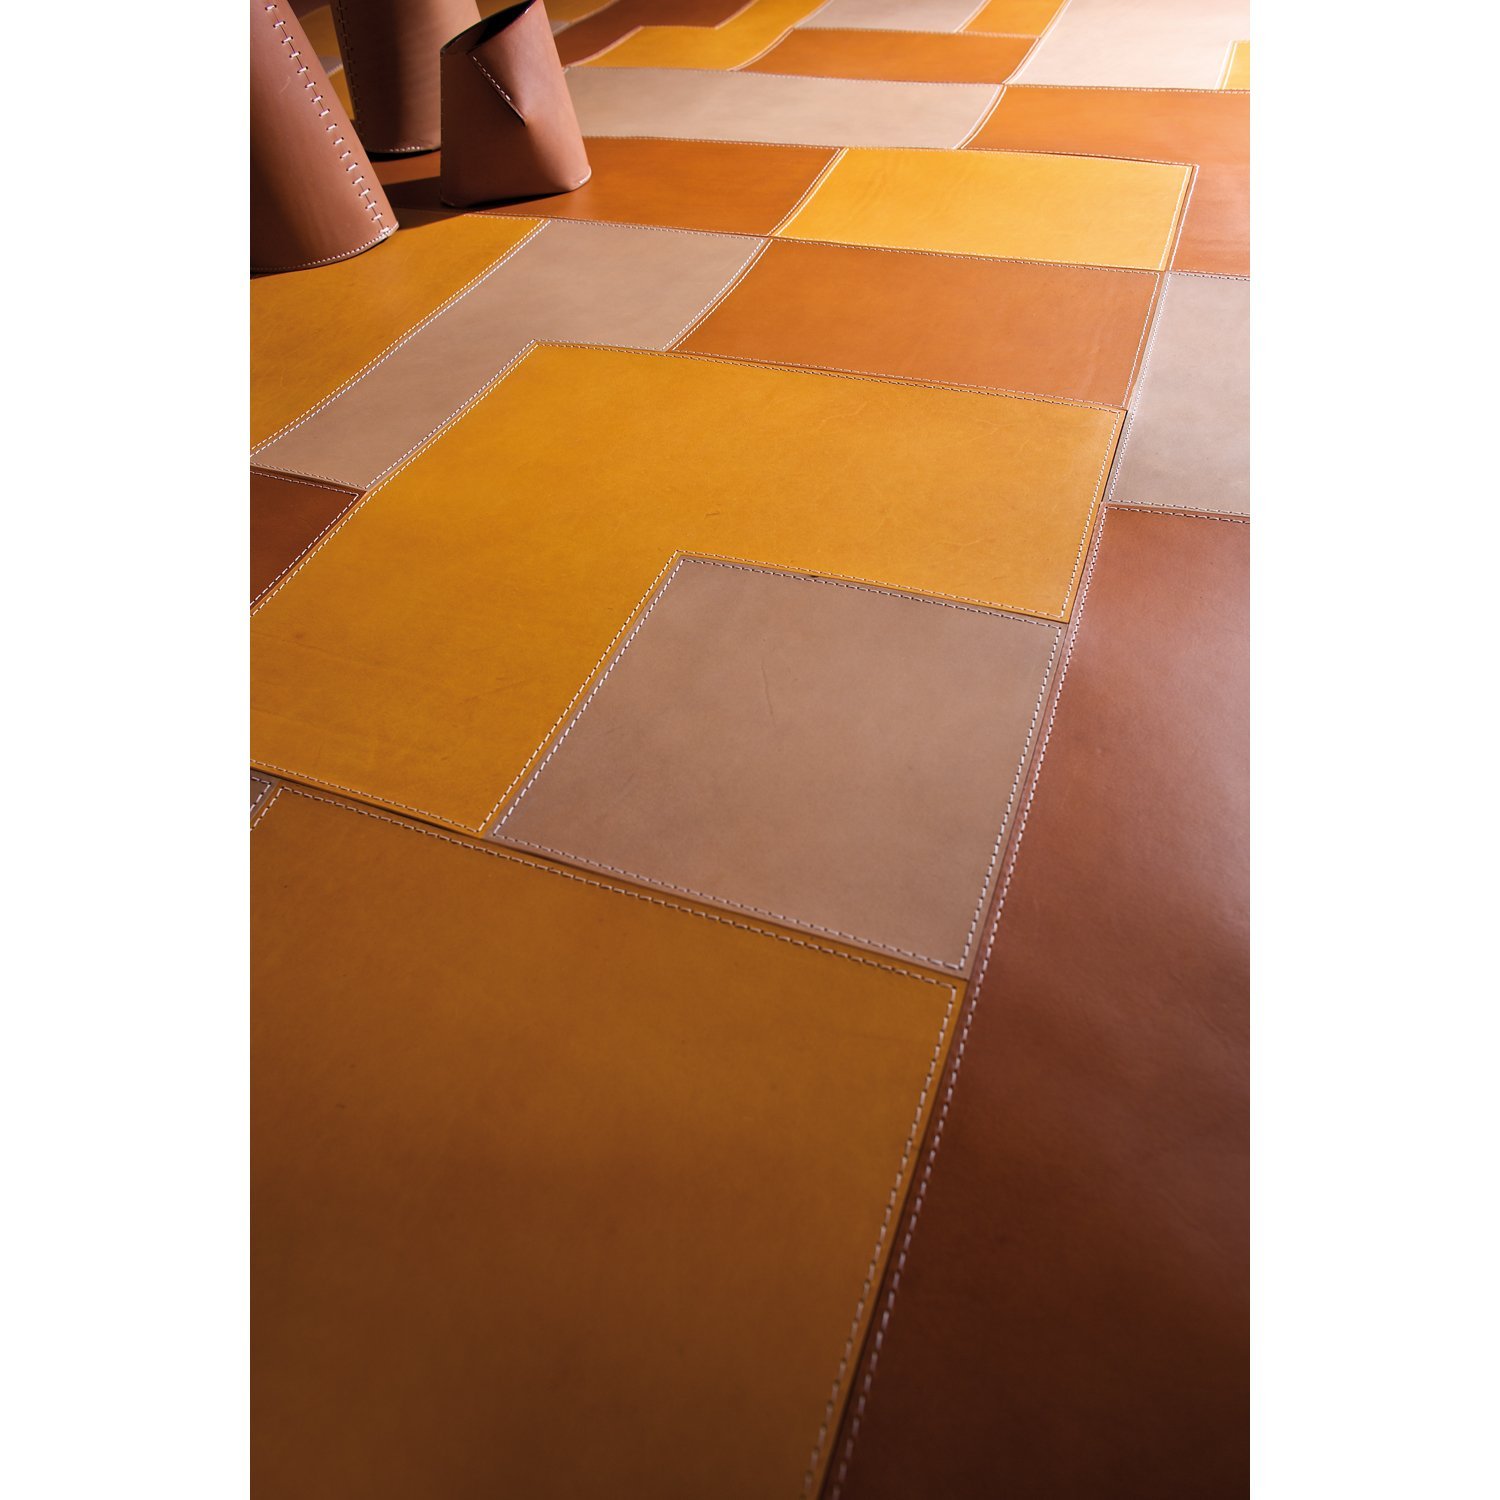 Carpet Mathé - Light - 55.1in x 78.7in